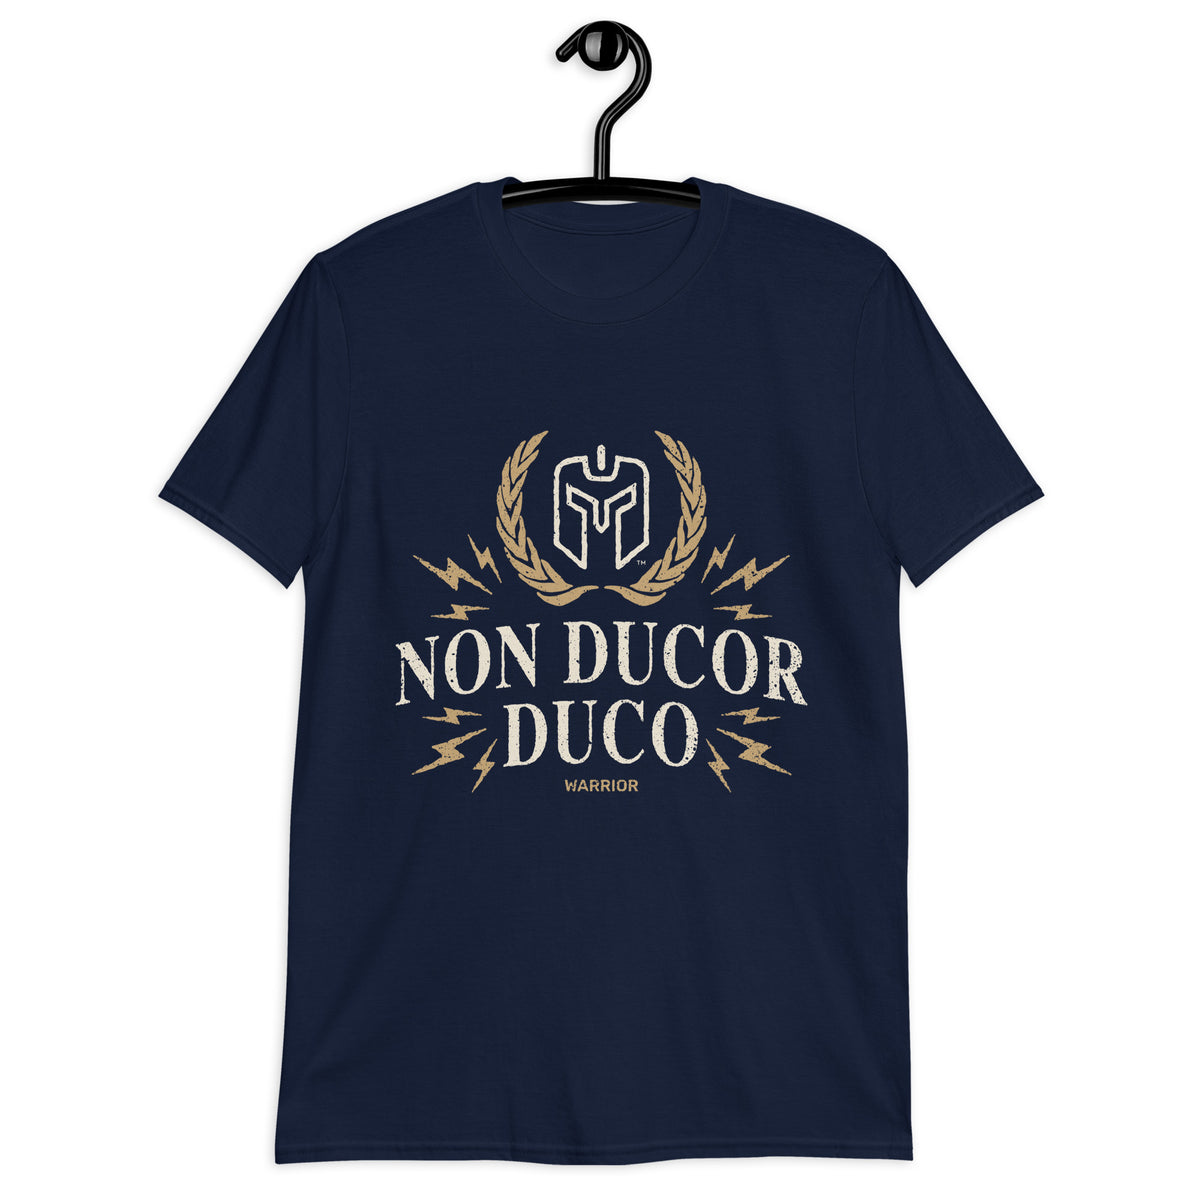 NON DUCOR DUCO (Latin- I Am Not Led, I Lead) Warrior - Short-Sleeve Unisex T-Shirt